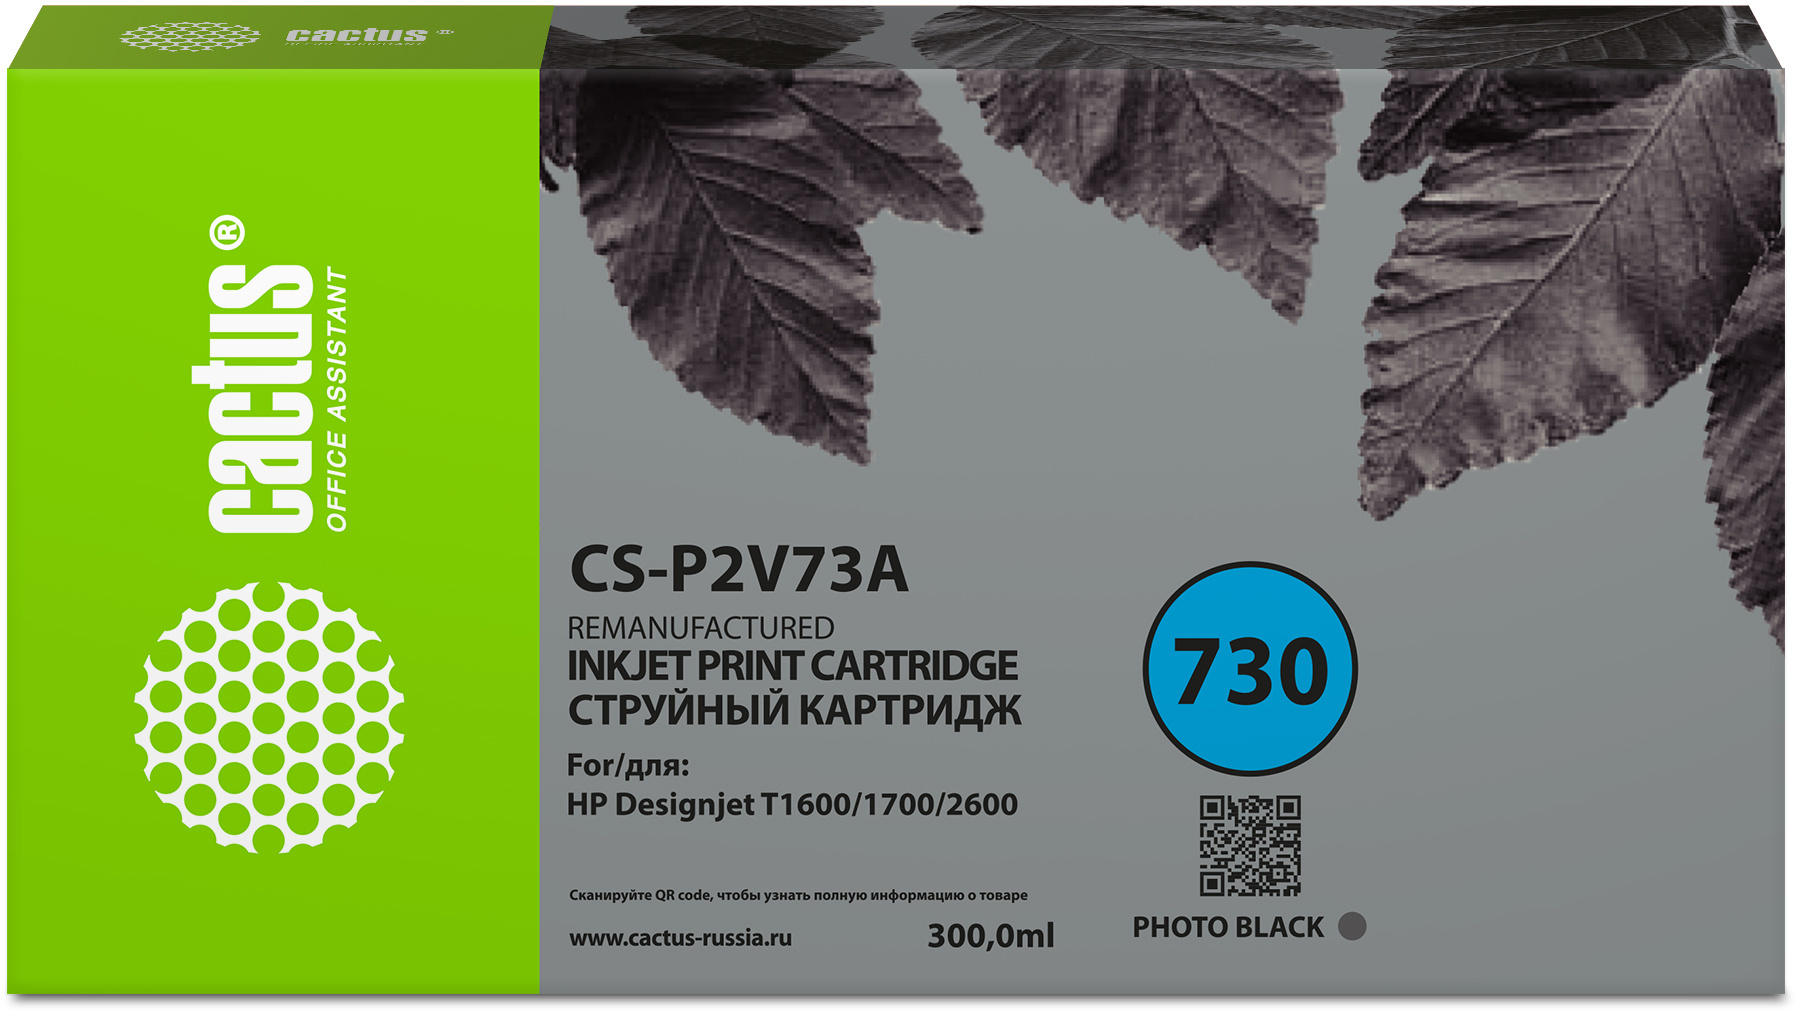 Картридж струйный Cactus CS-P2V73A №730 фото черный (300мл) для HP Designjet T1600/1700/2600